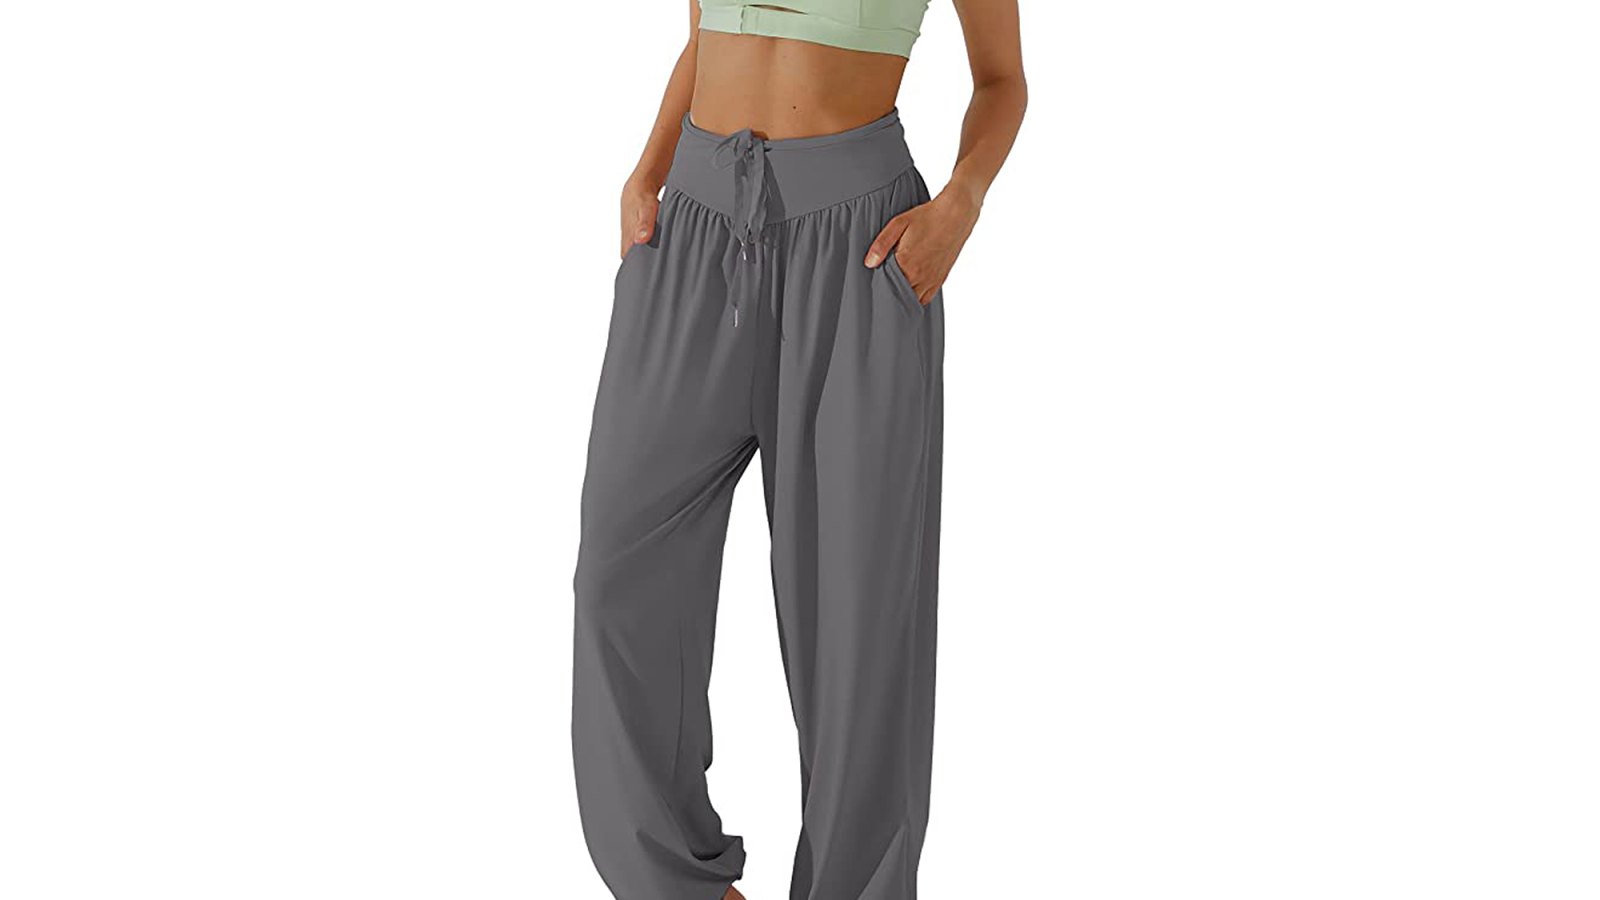 Women's wide yoga pants - Yoga harem pants